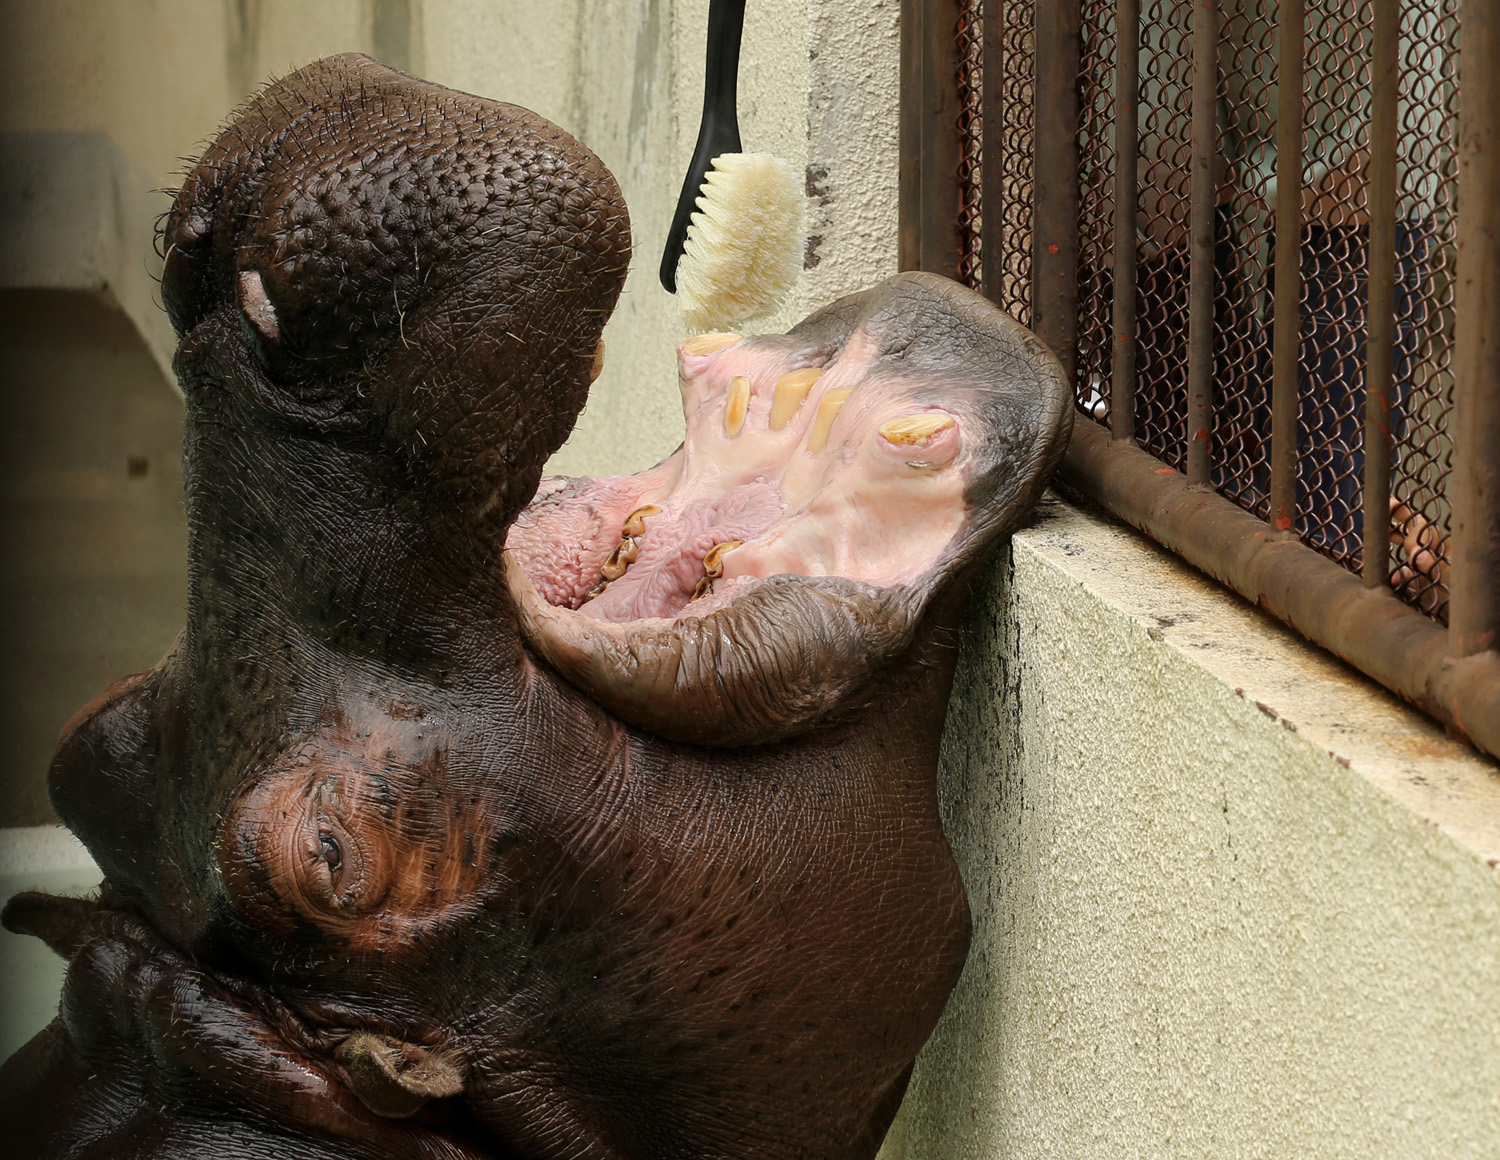 Zoo Workers Clean Hippopotamus' Teeth In Japan